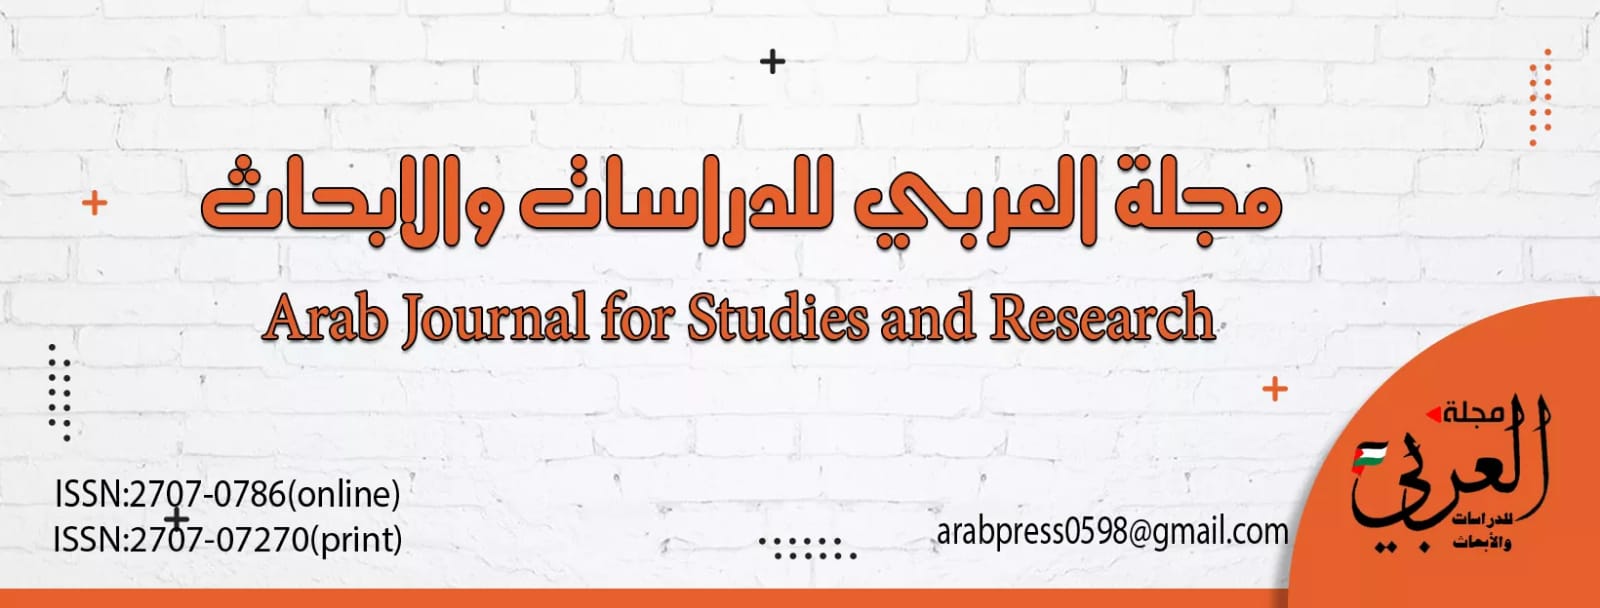 مجلة العربيللدراسات والأبحاث